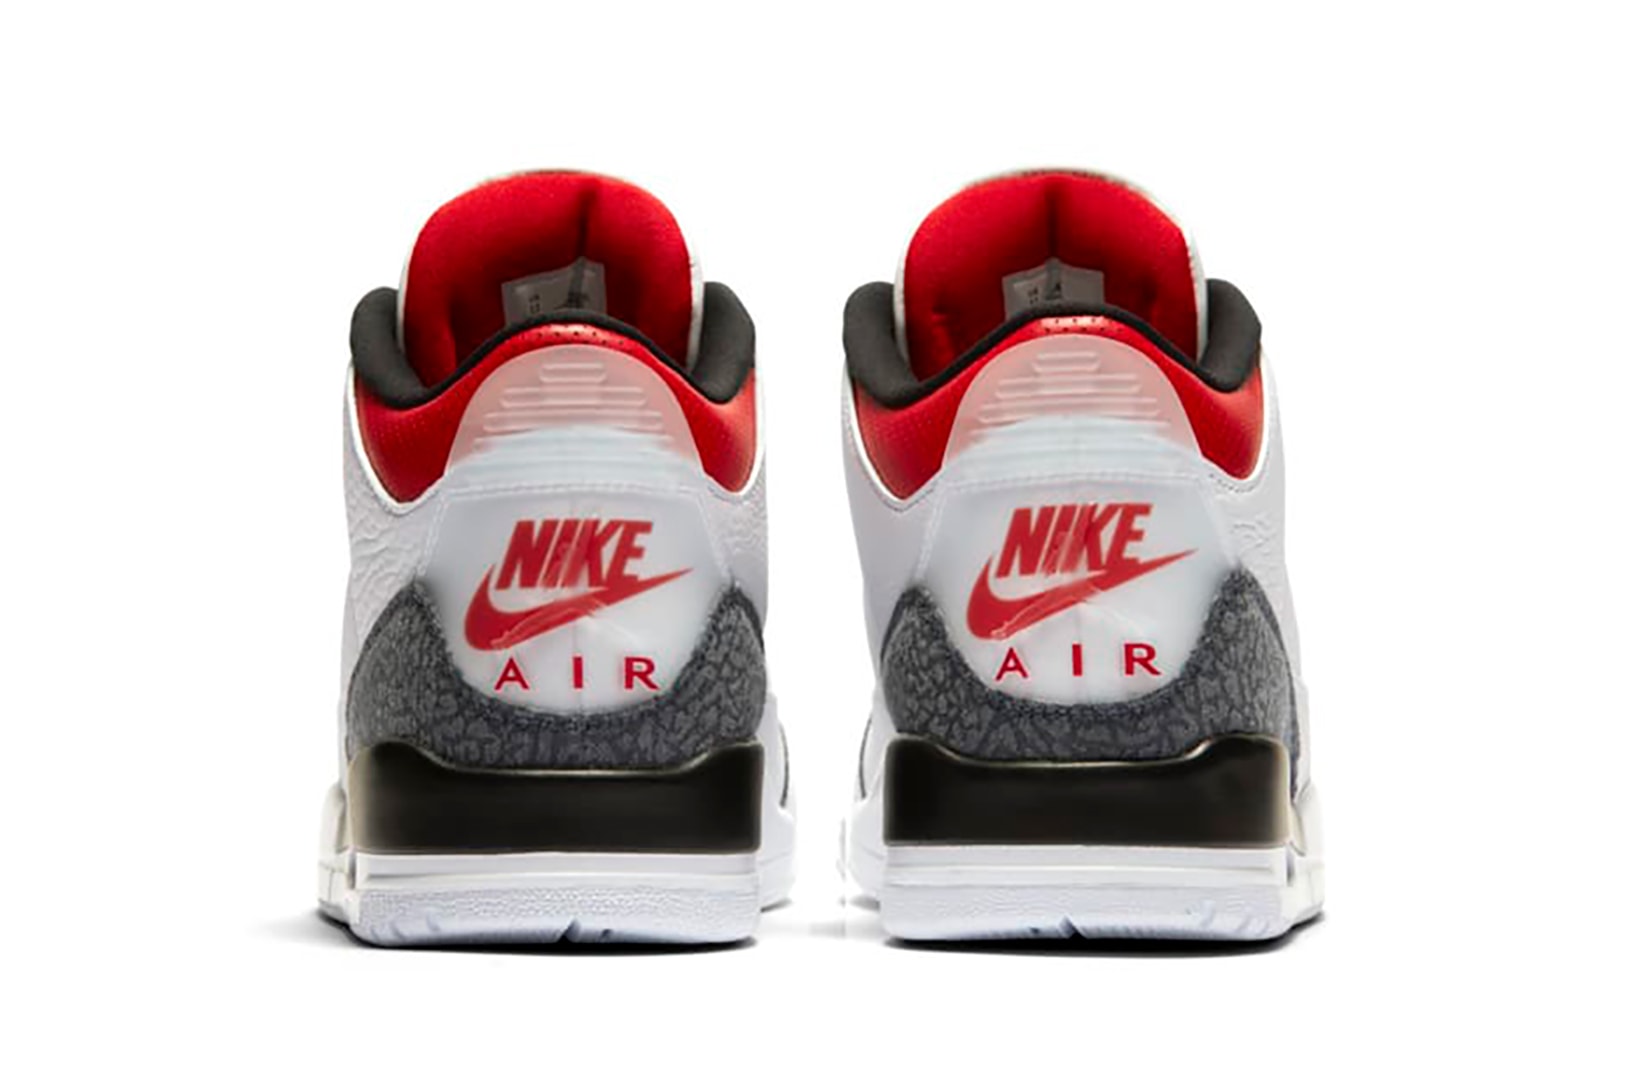 nike air jordan 3 sneakers white red gray elephant print denim japan colorway footwear shoes sneakerhead 